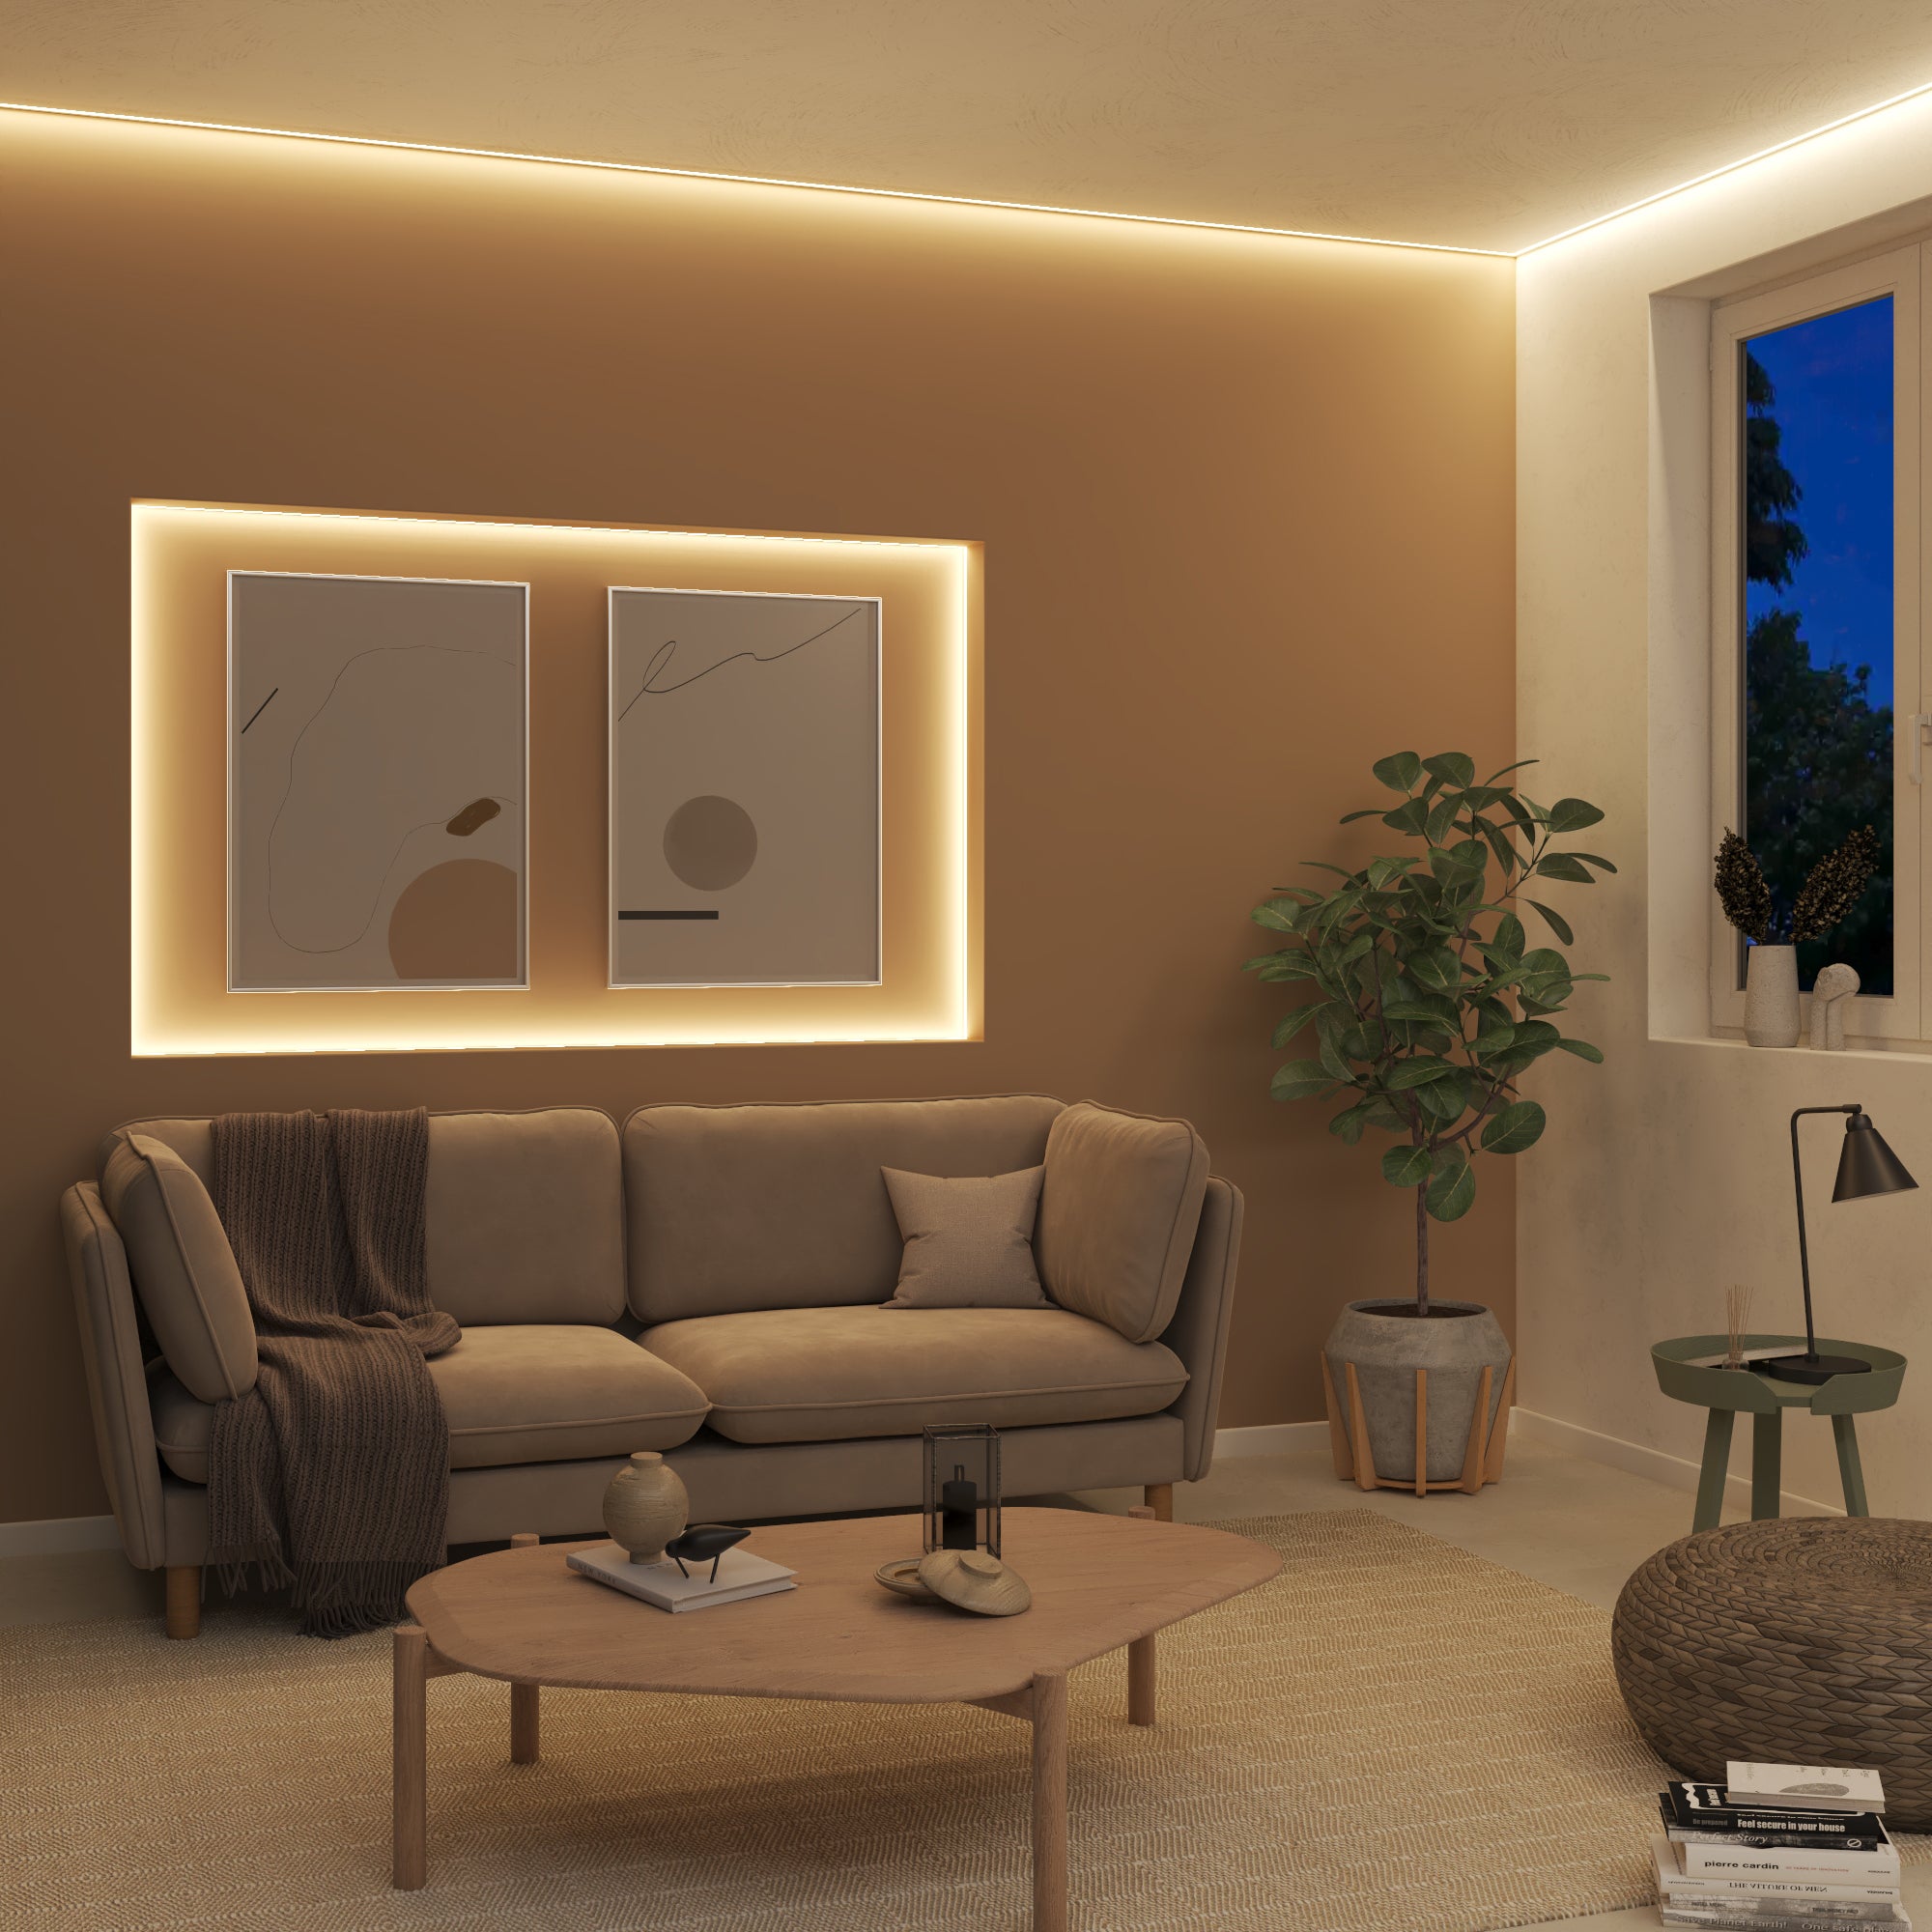 Salon moderno con luz led indirecta en el techo y bajo el mueble